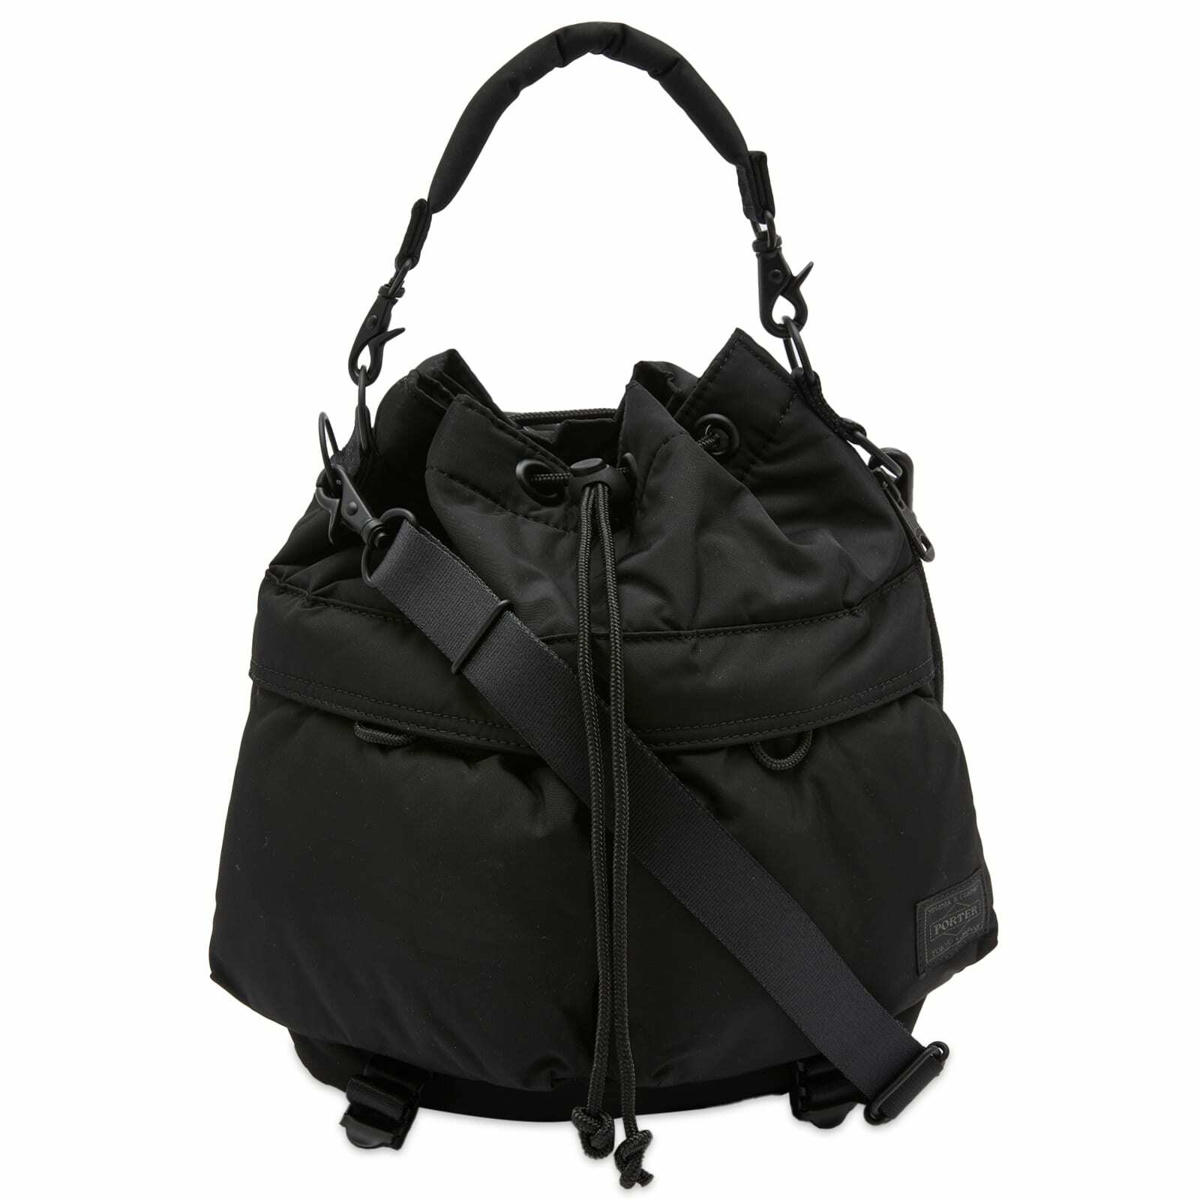 Porter-Yoshida & Co. Senses Tool Bag in Black Porter-Yoshida & Co.